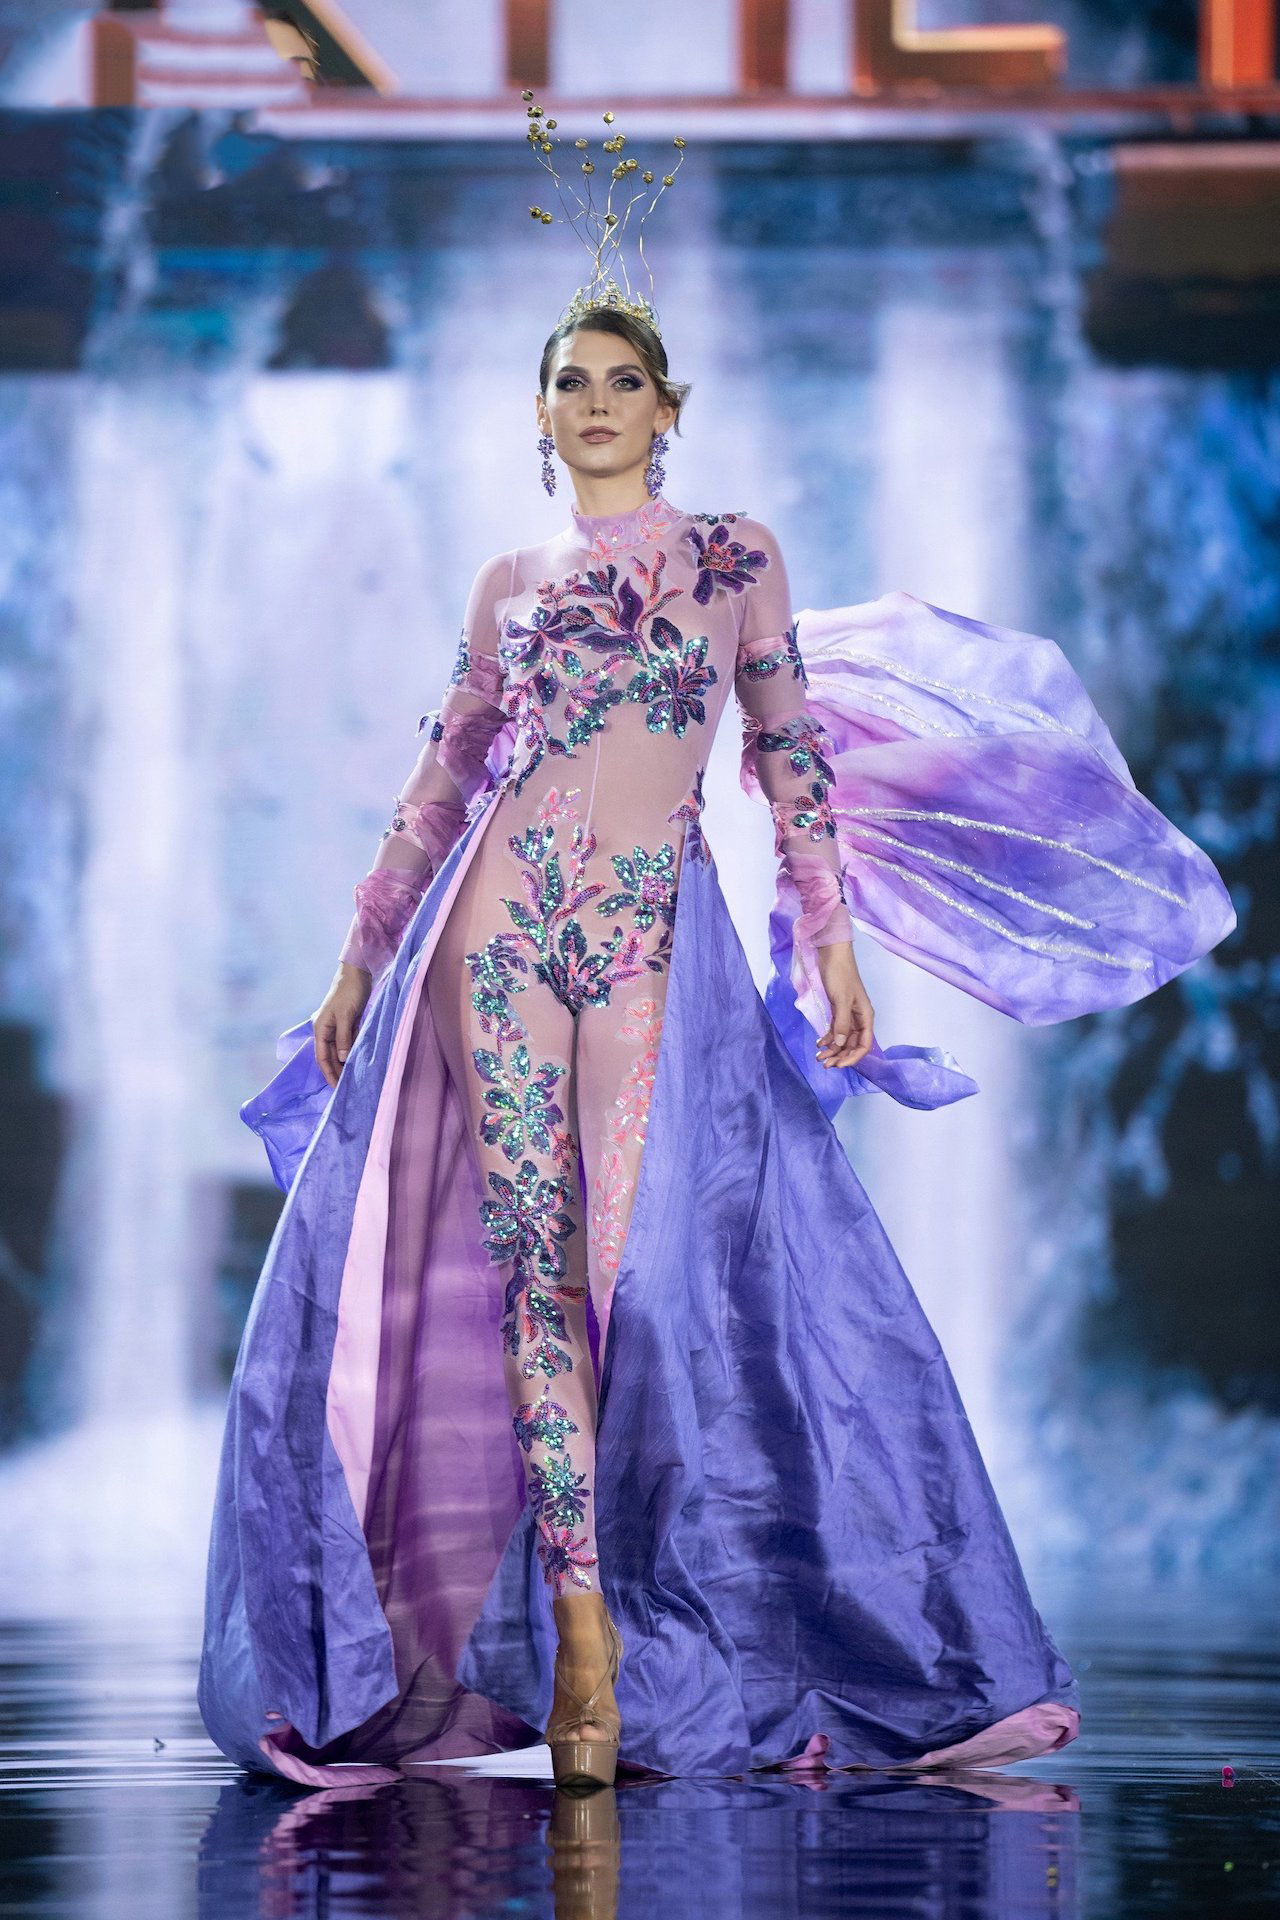 Lê Hoàng Phương bùng nổ tại đêm thi trang phục dân tộc Miss Grand International - Ảnh 20.